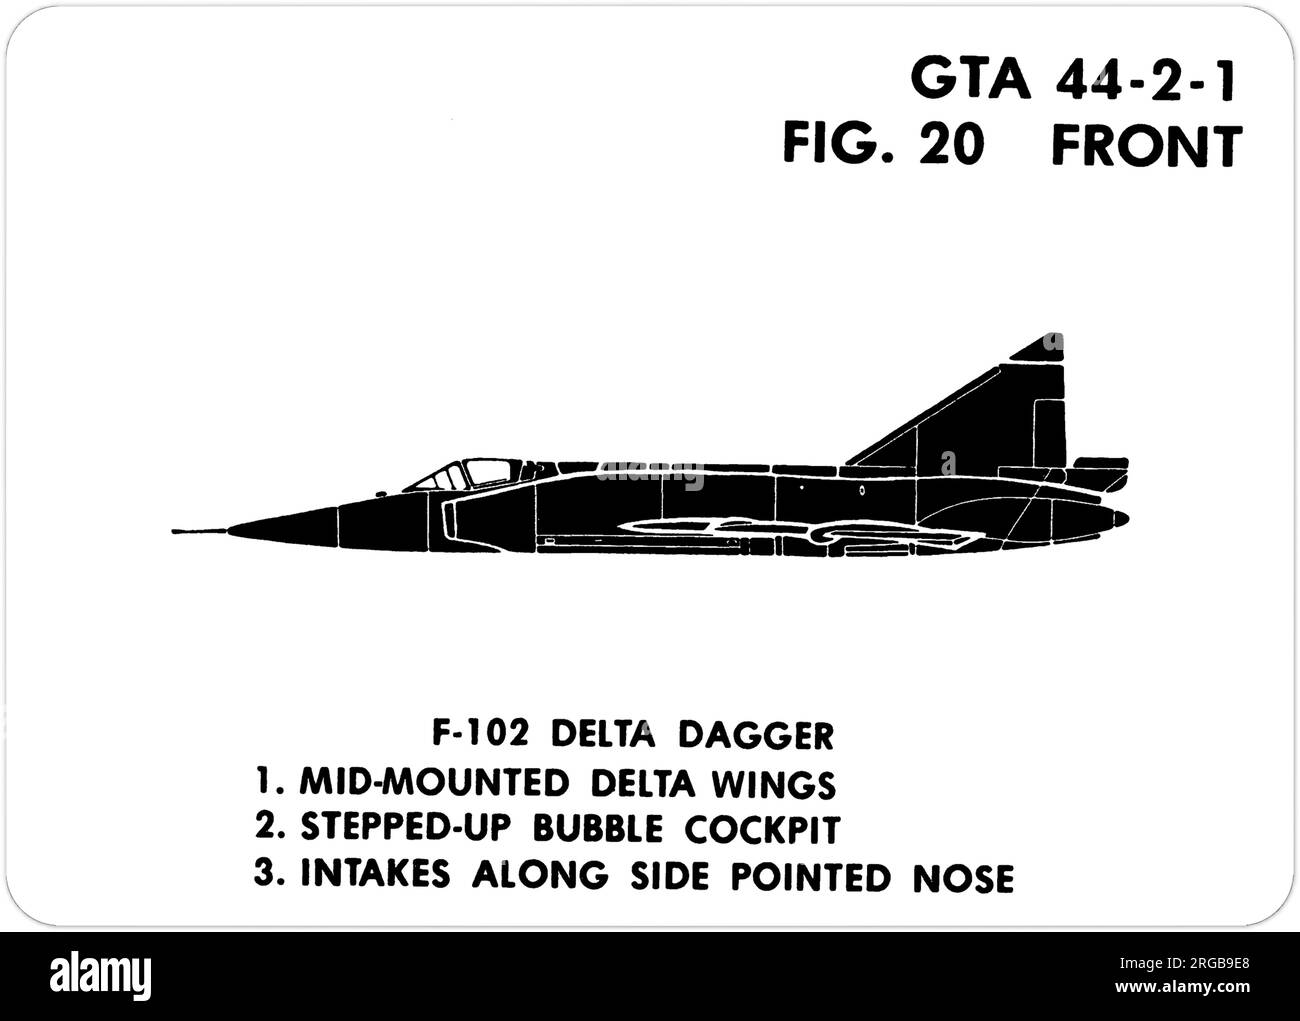 Convair F-102A Delta Dagger. Questa è una delle serie di Graphics Training Aids (GTA) utilizzati dall'esercito degli Stati Uniti per addestrare il loro personale a riconoscere gli aerei amichevoli e ostili. Questo particolare set, GTA 44-2-1, è stato pubblicato nel July1977. Il set comprende aerei provenienti da: Canada, Italia, Regno Unito, Stati Uniti e URSS. Foto Stock